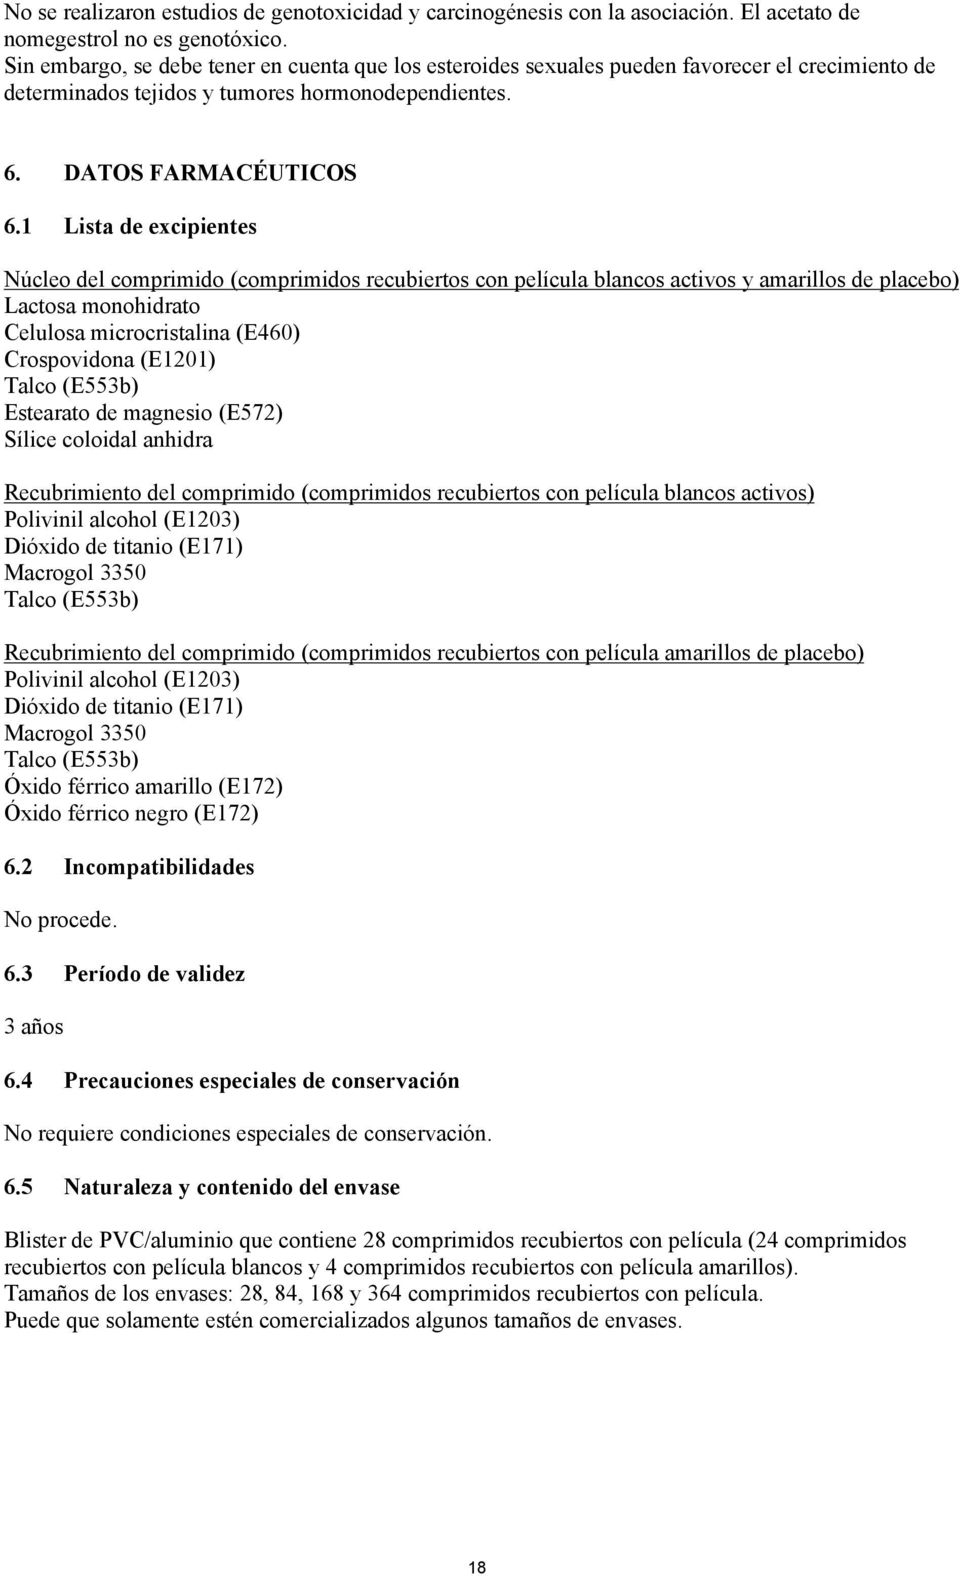 1 Lista de excipientes Núcleo del comprimido (comprimidos recubiertos con película blancos activos y amarillos de placebo) Lactosa monohidrato Celulosa microcristalina (E460) Crospovidona (E1201)